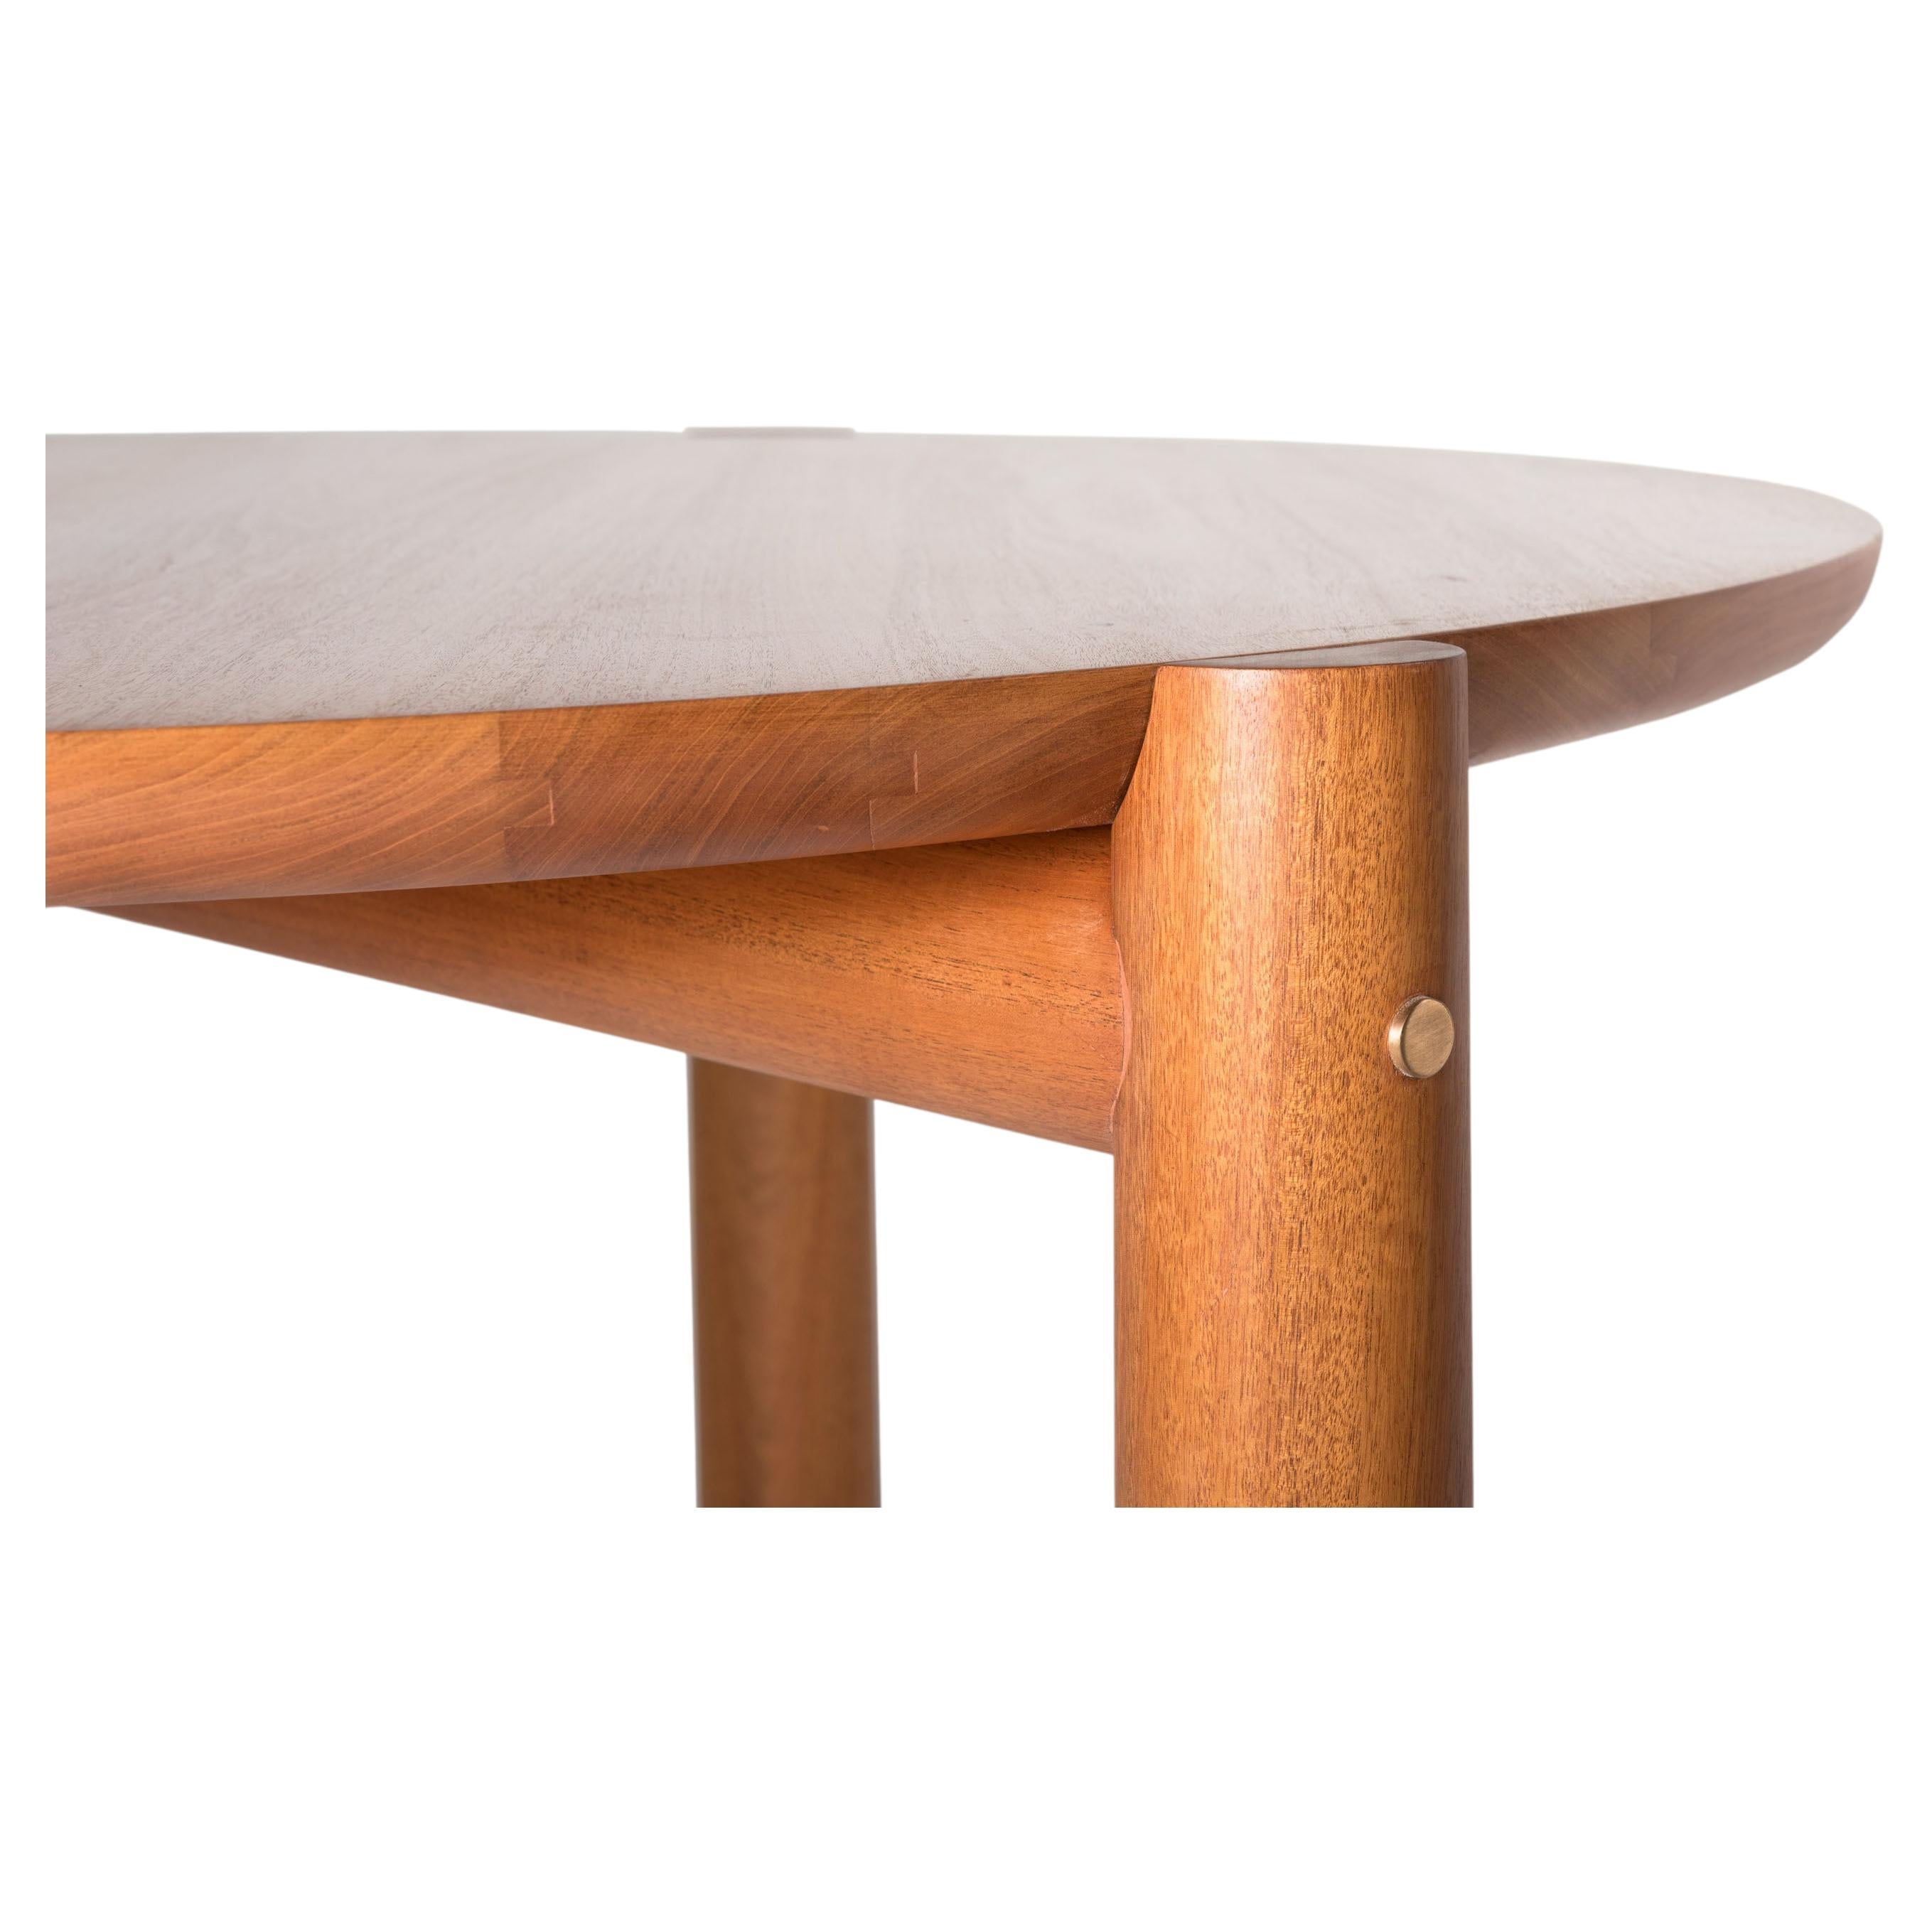 Tisch mit runder Platte und drei Beinen, die durch eine saubere und feine Konstruktion verbunden sind. Es zeichnet sich durch seine sehr schönen und präzisen Verbindungen und Schnitte aus. Das Bronzedetail, das sich an der Seite jedes Beins